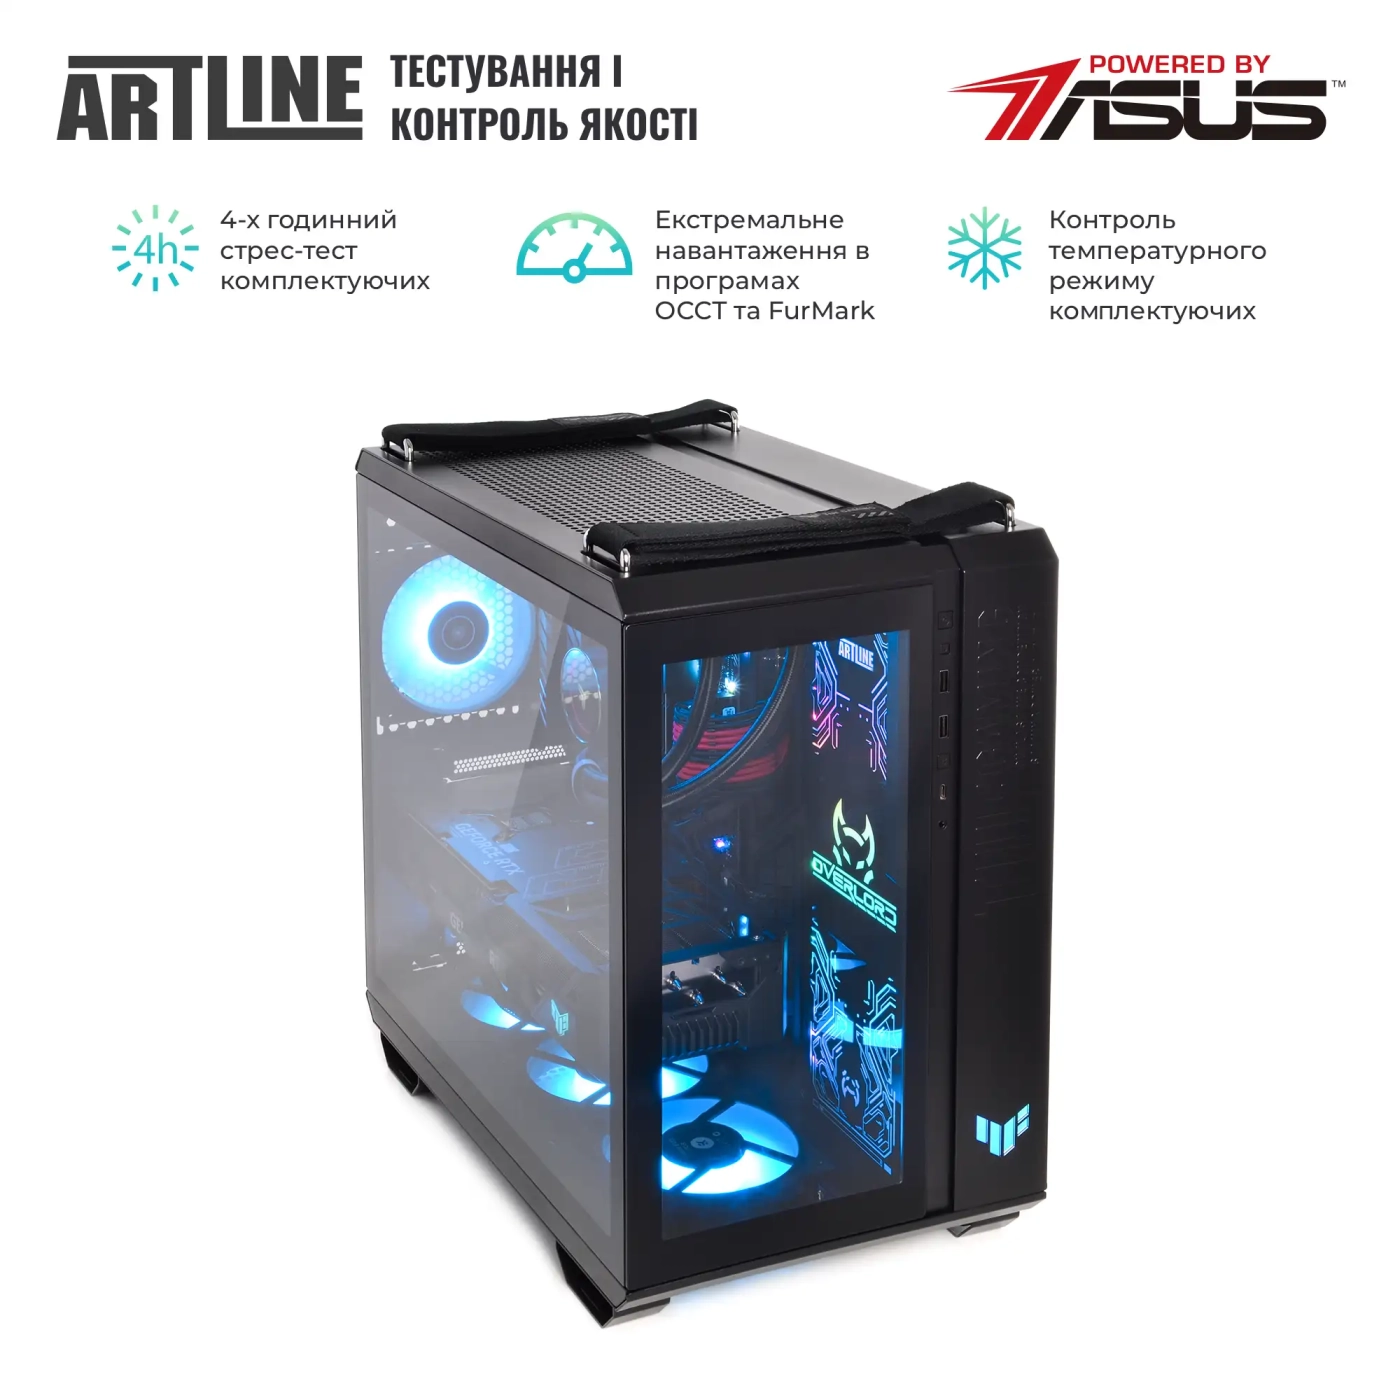 Купить Компьютер ARTLINE Gaming GT502v29 - фото 9